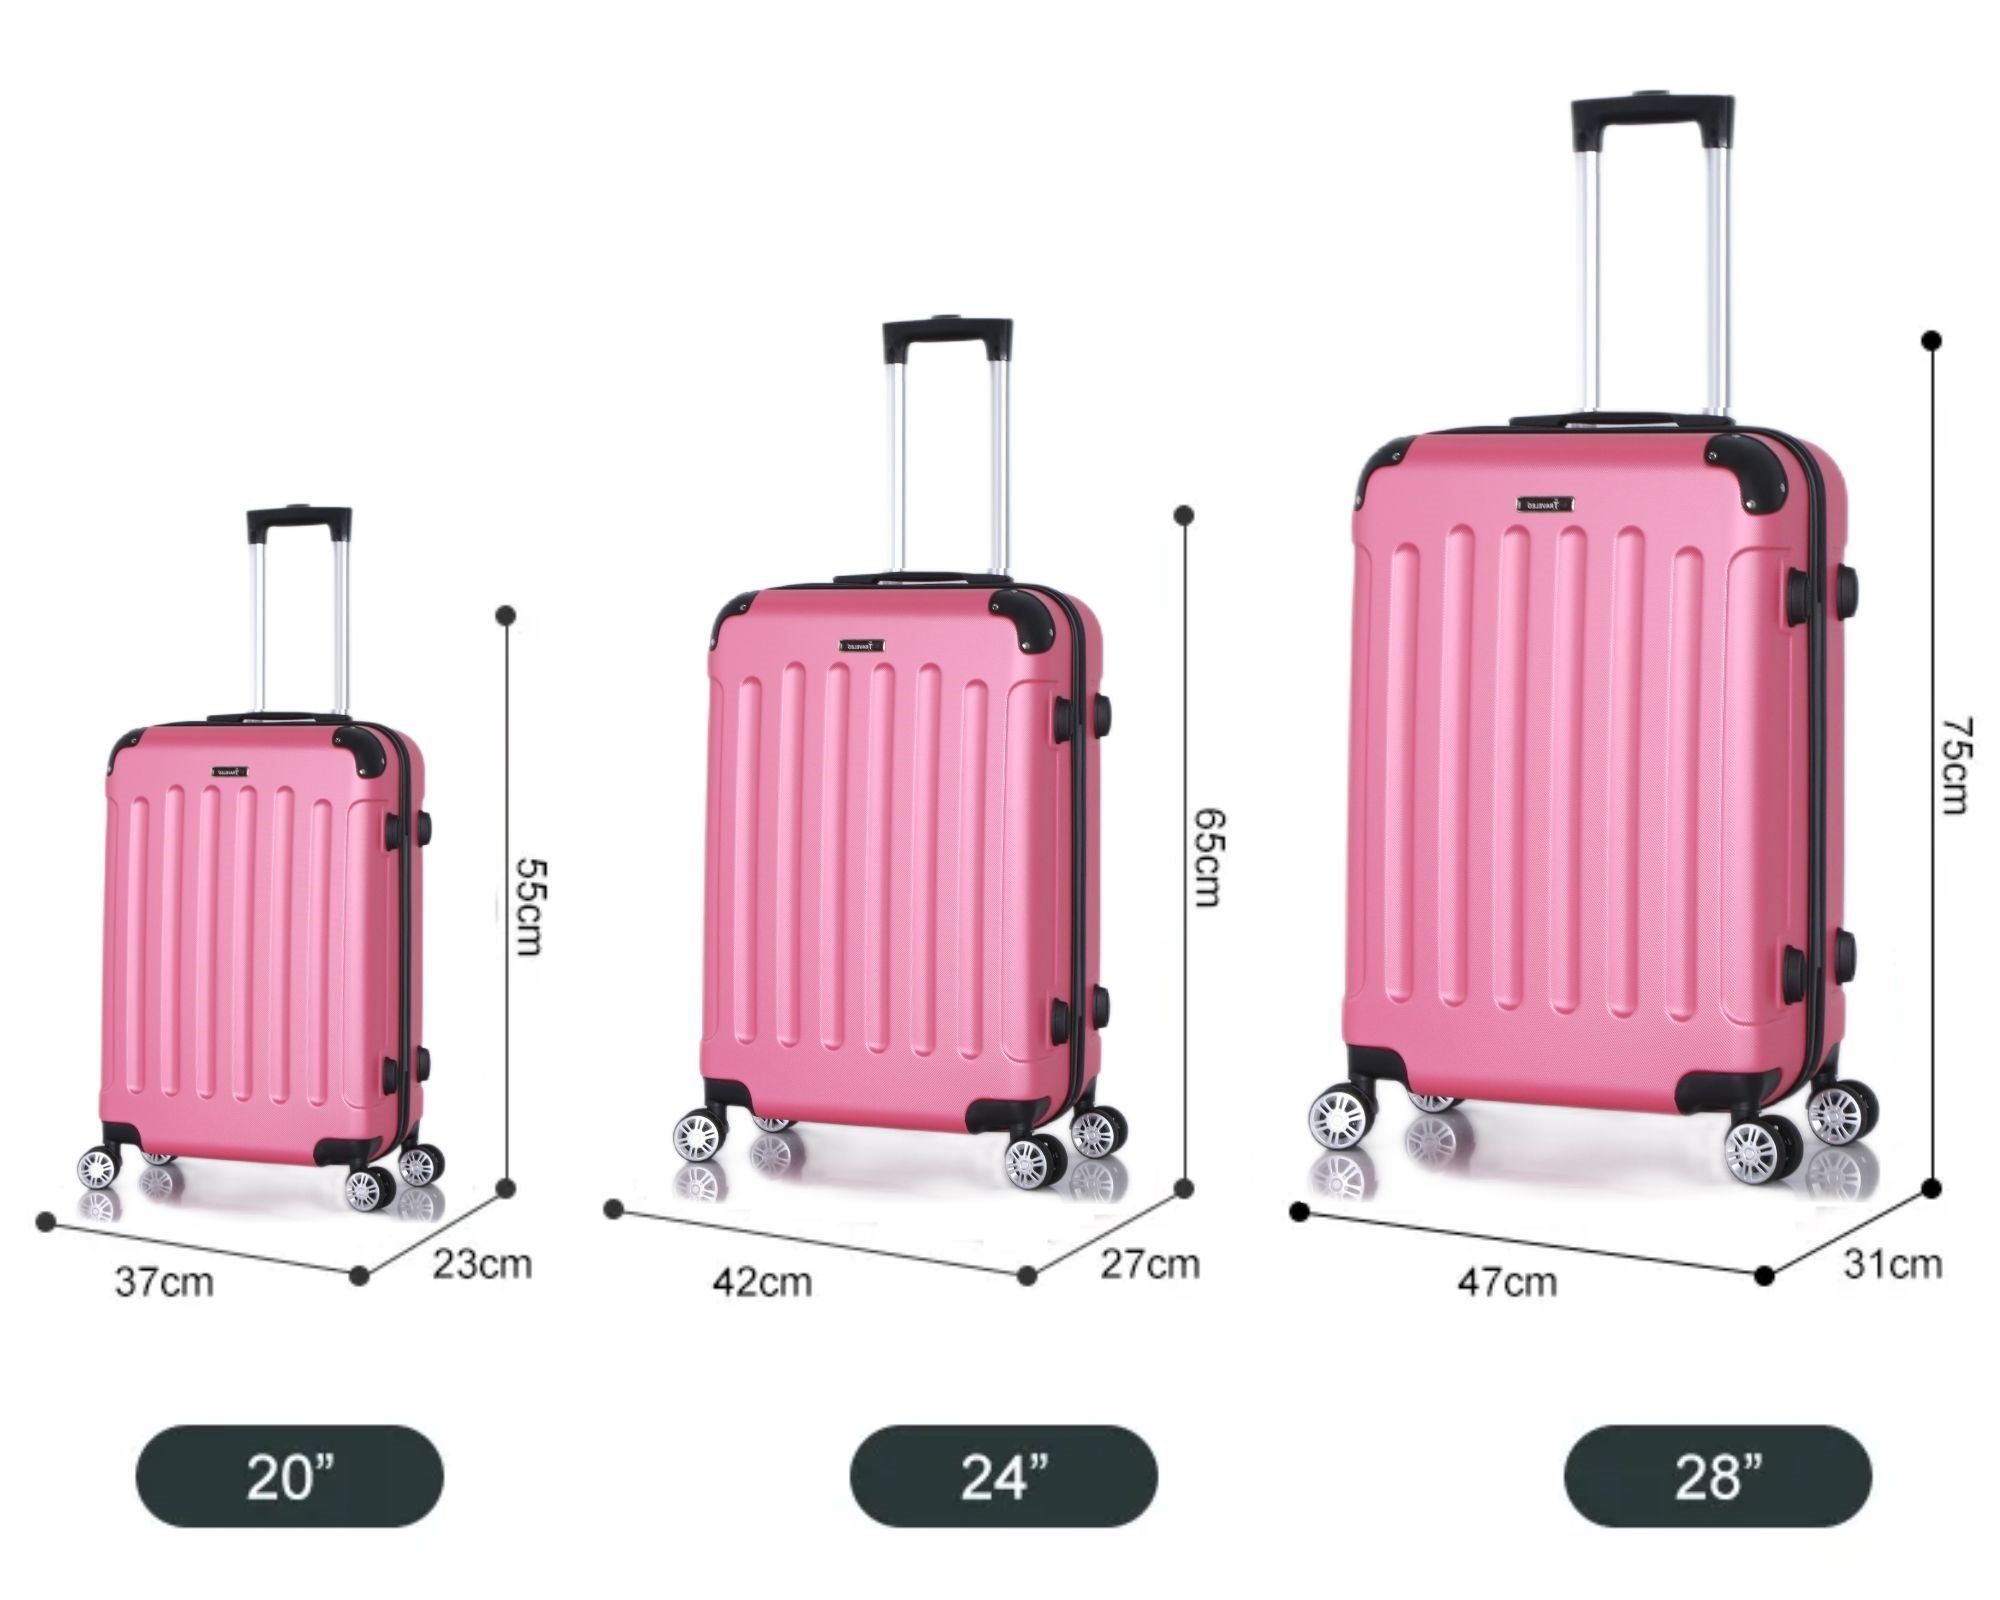 Rungassi Kofferset Hartschalenkoffer Trolley Set pink Rungassi Reisekoffer ABS01 Koffer